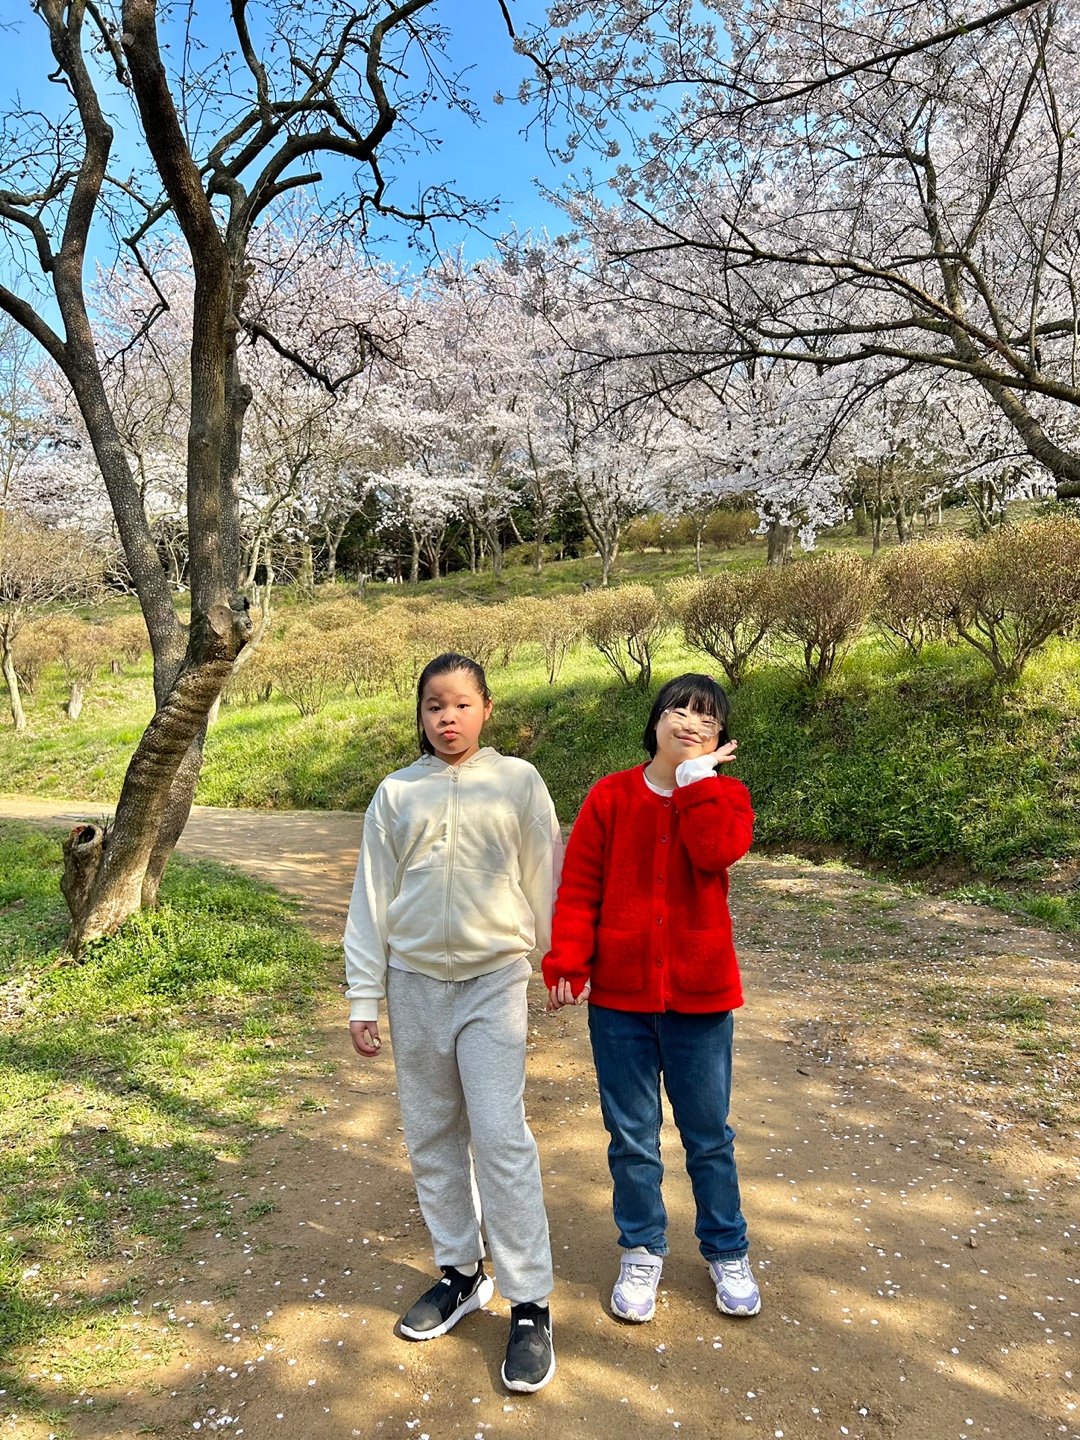 예쁜 벚꽃을 배경으로 두 이용인이 사이좋게 찍은 사진입니다.